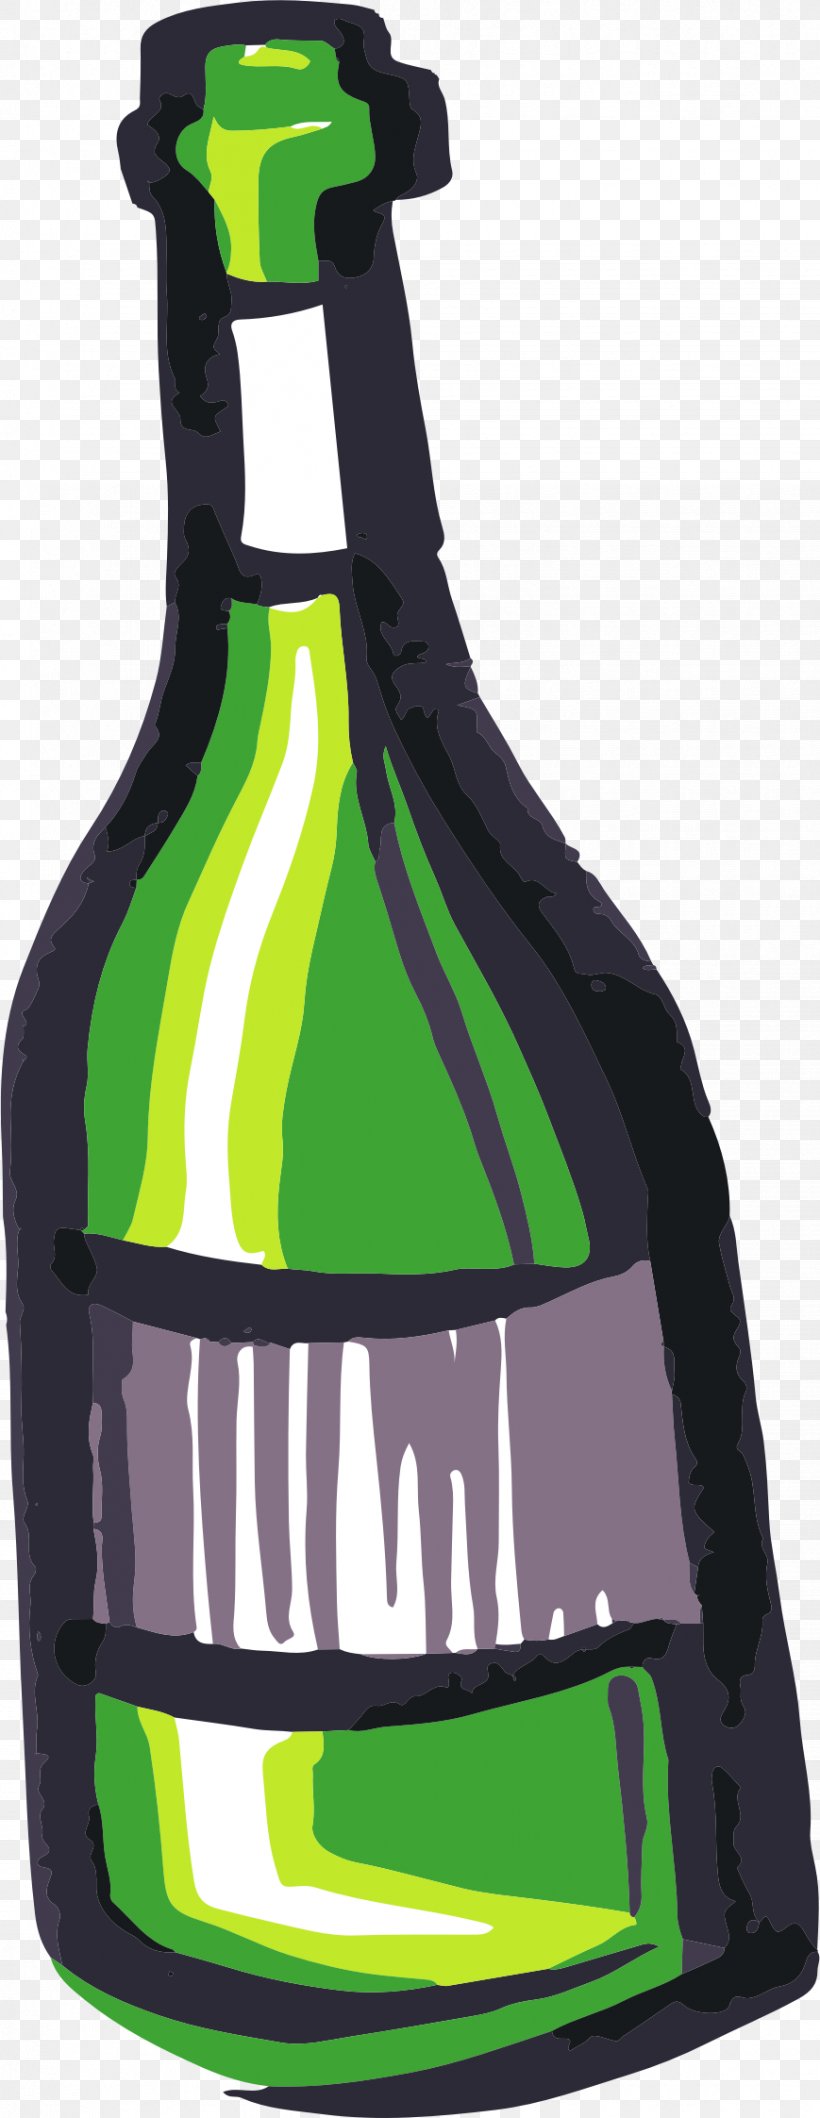 Wine Bottle Clip Art, PNG, 869x2245px, Wine, Beer Bottle, Bottle, Drinkware, Glass Bottle Download Free